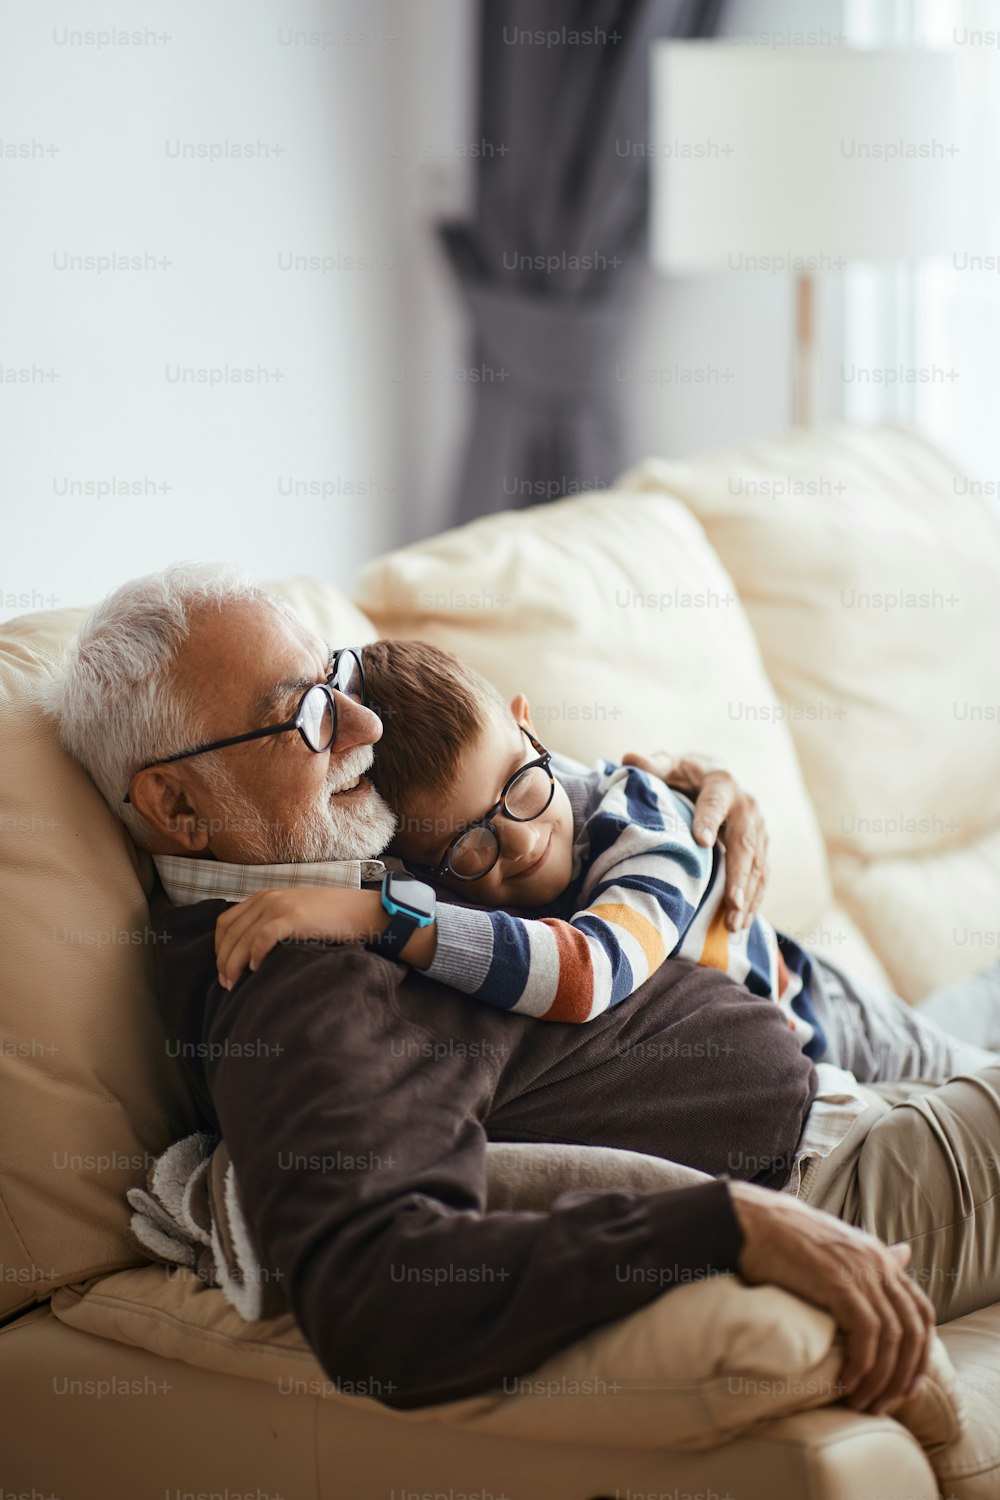 Garotinho feliz abraçando seu avô enquanto passavam o tempo juntos em casa.